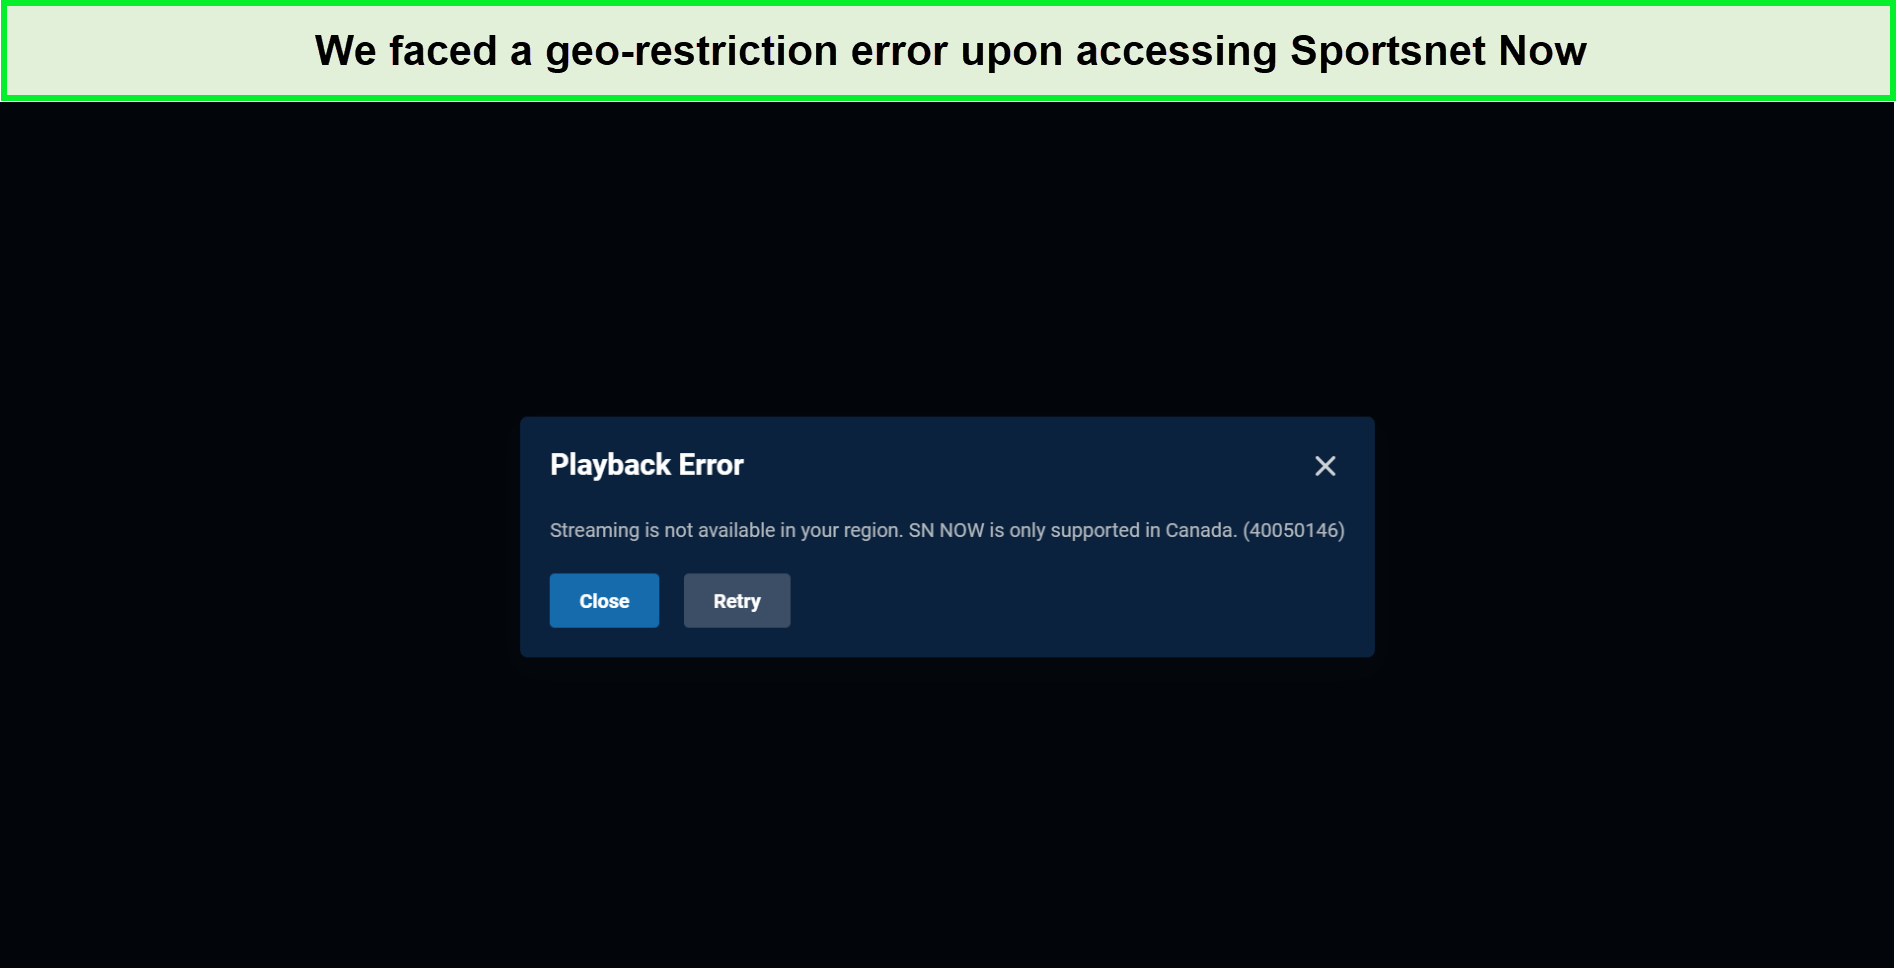 sportsnet-now-in-Canada-geo-restriction-error